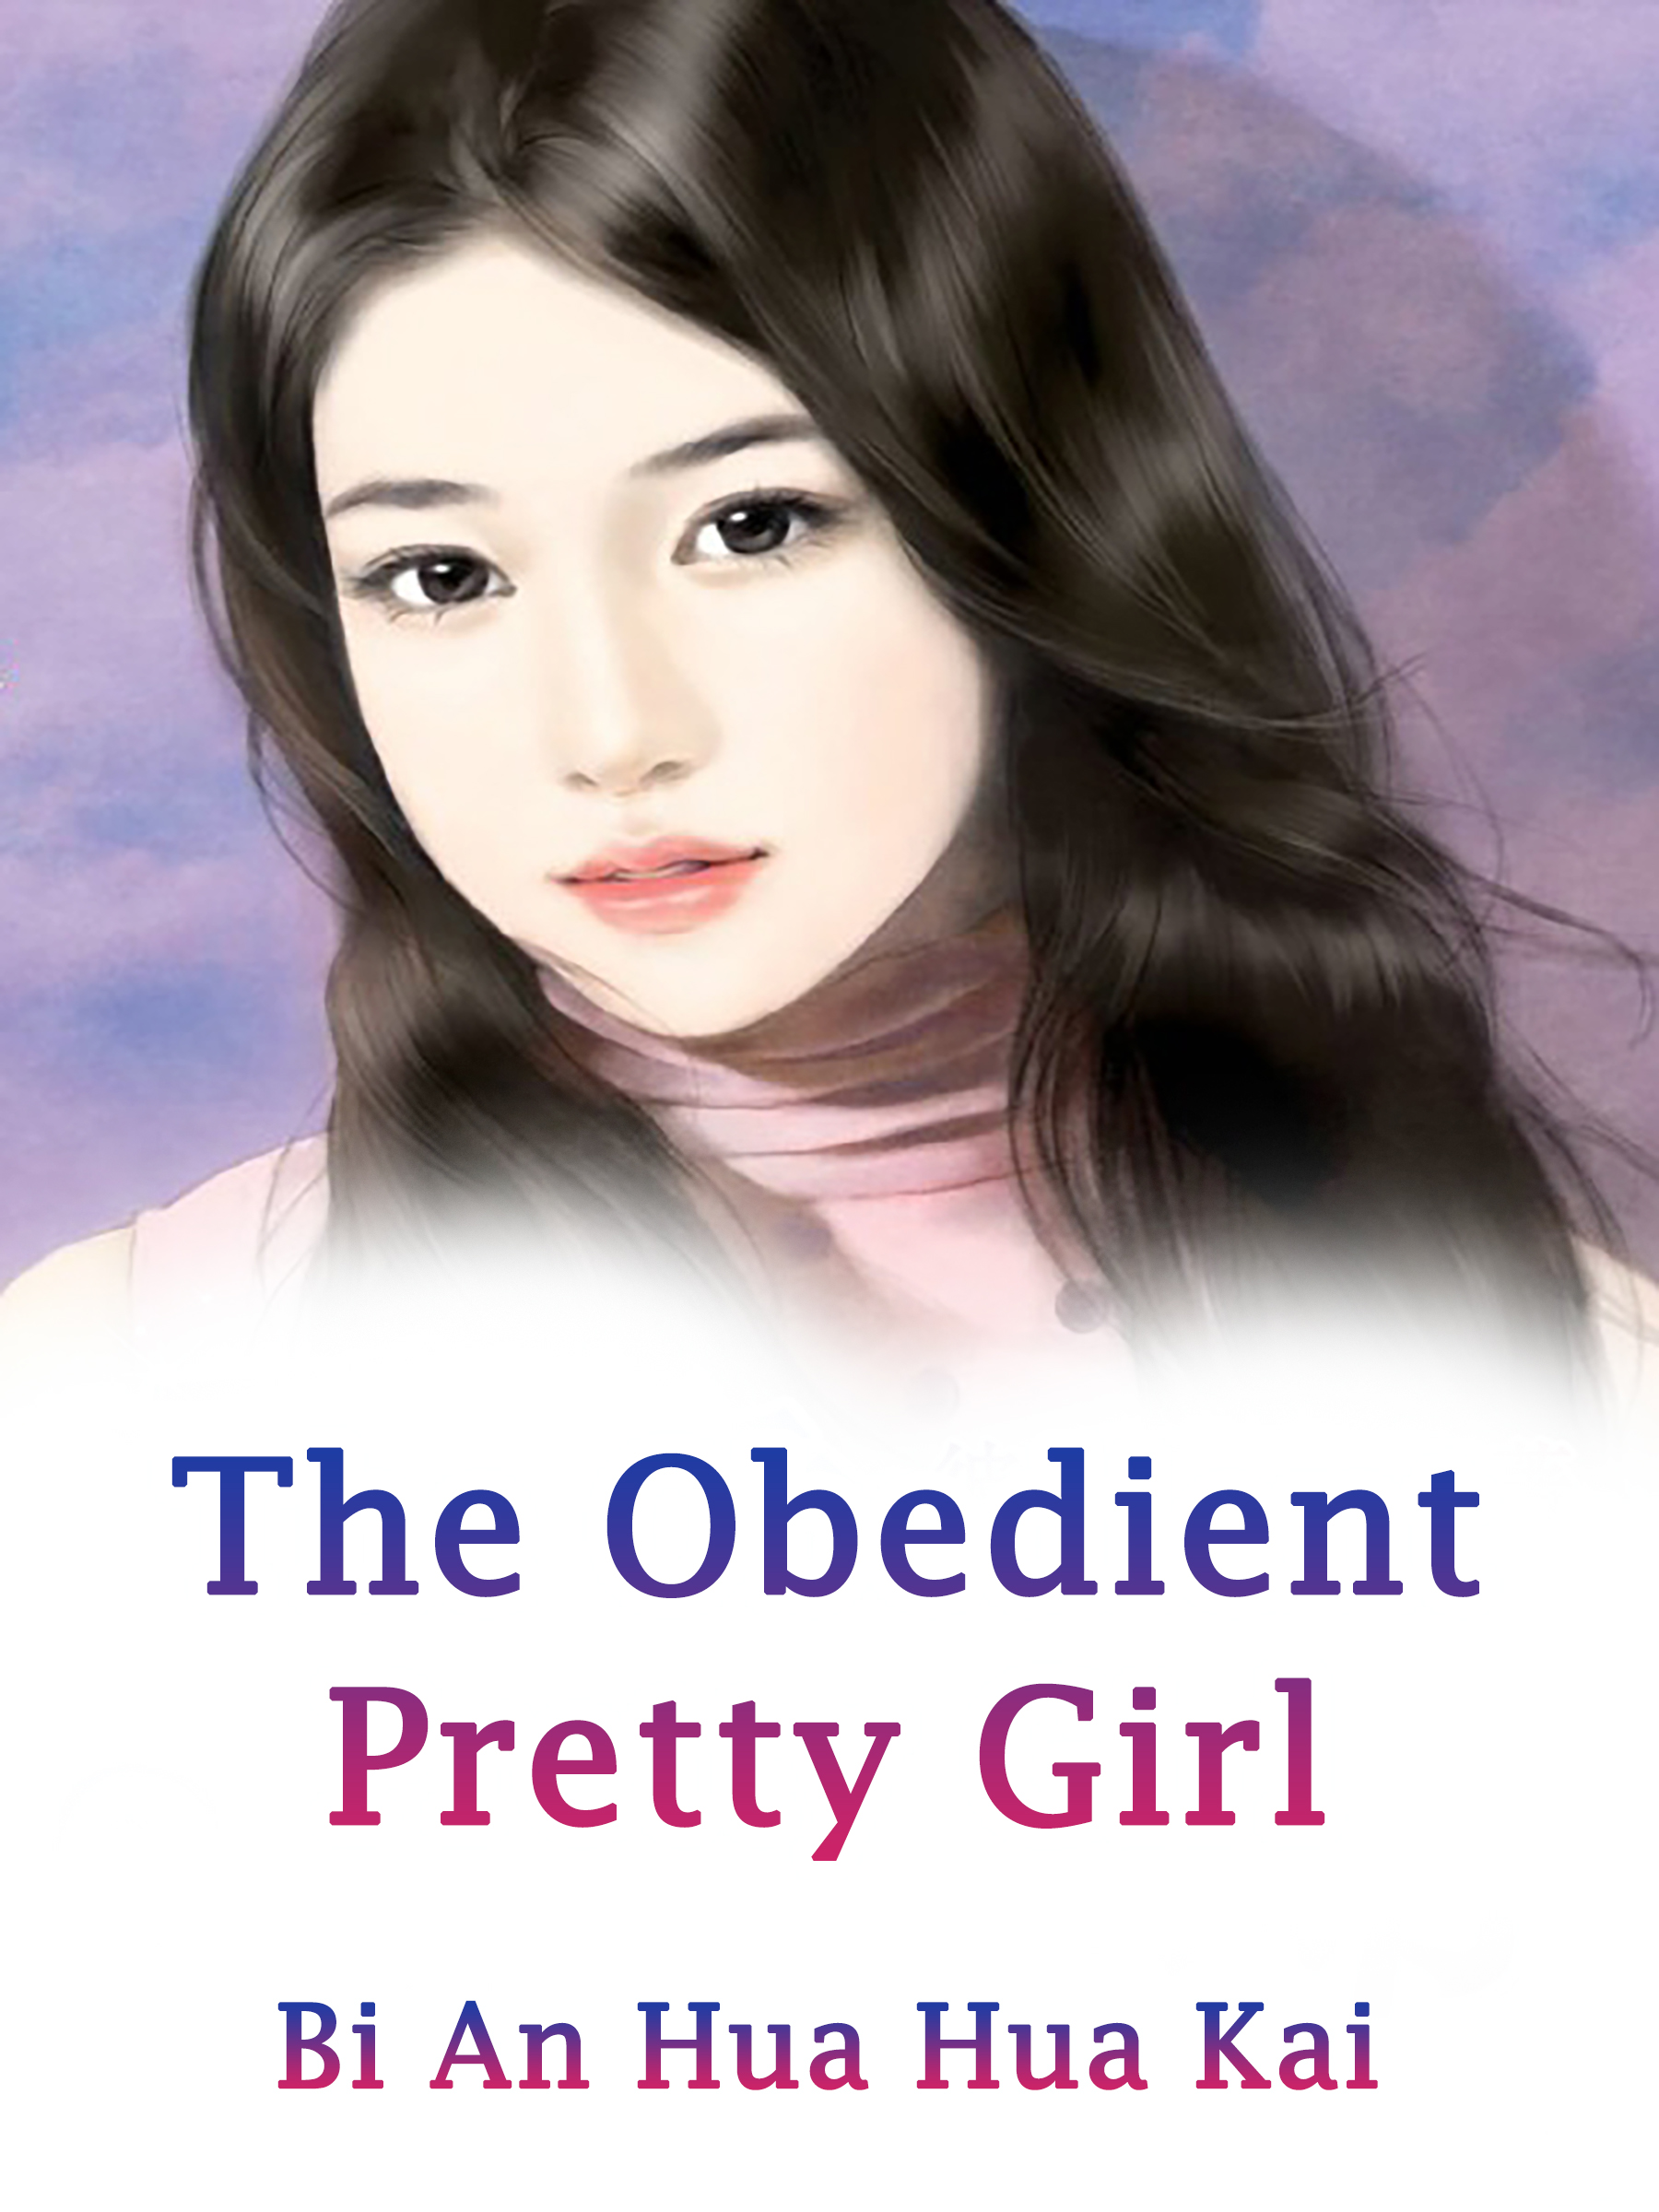 The Obedient Pretty Girl Novel Full Story Book Babelnovel